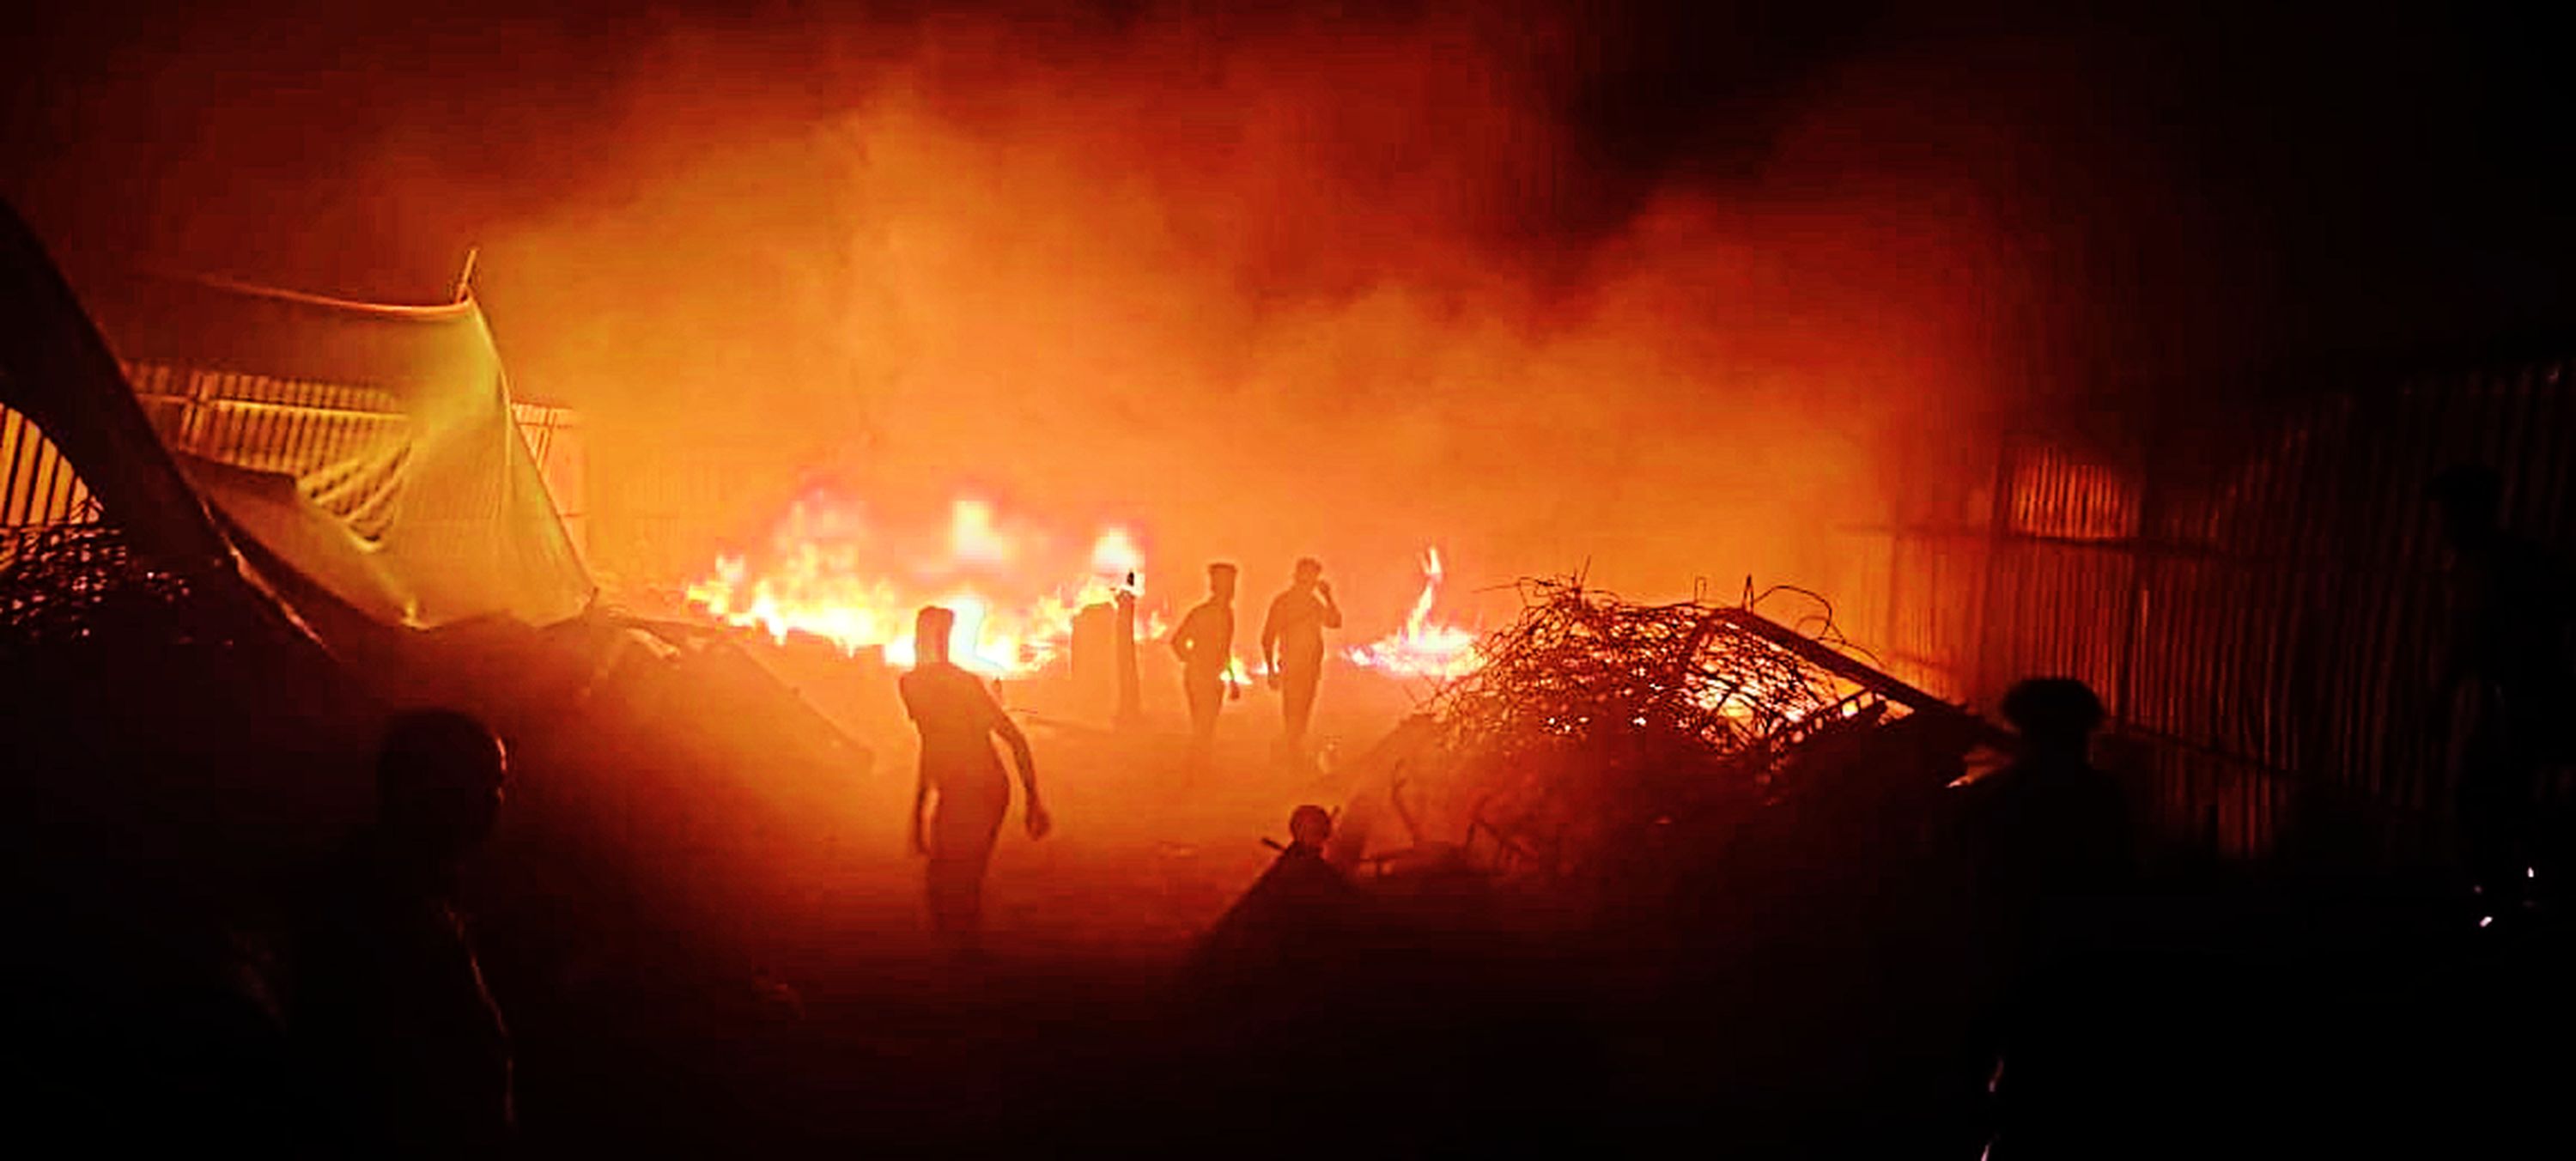 गोदाम में लगी भीषण आग